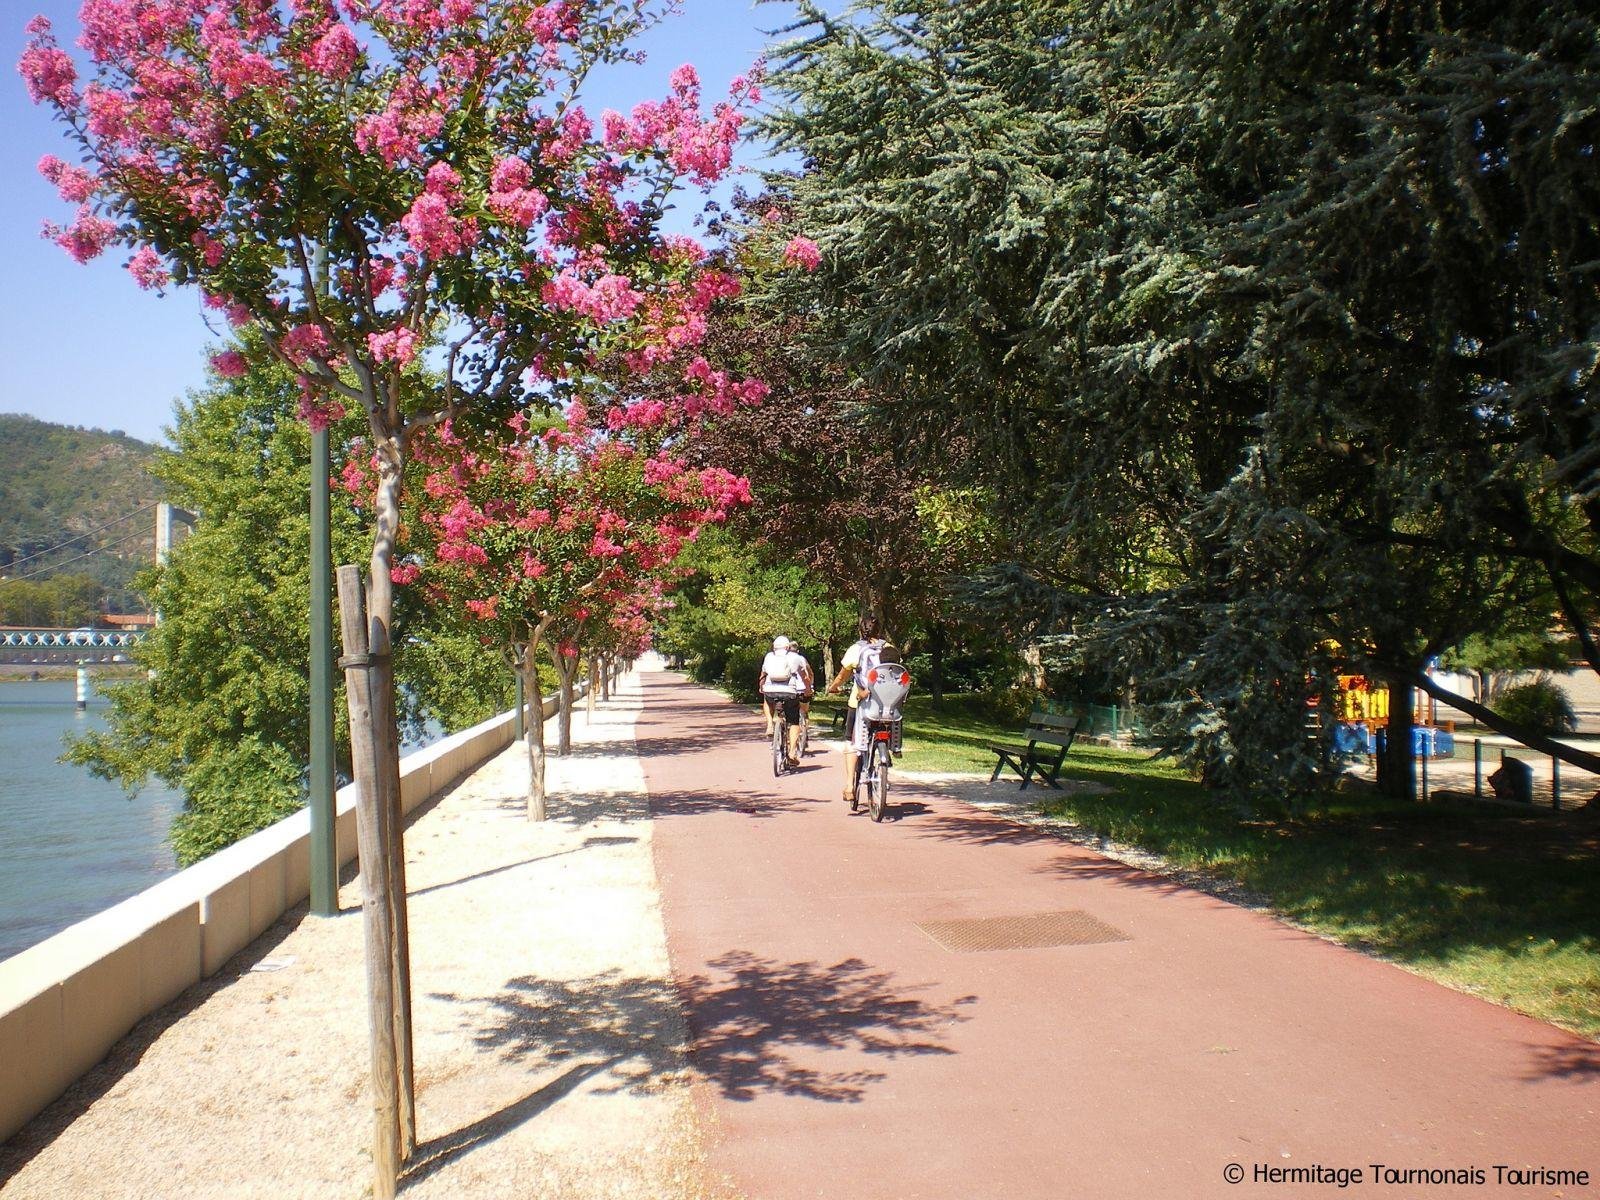 Hôtel de la Villeon | A hotel ideal for bike ride in Ardèche